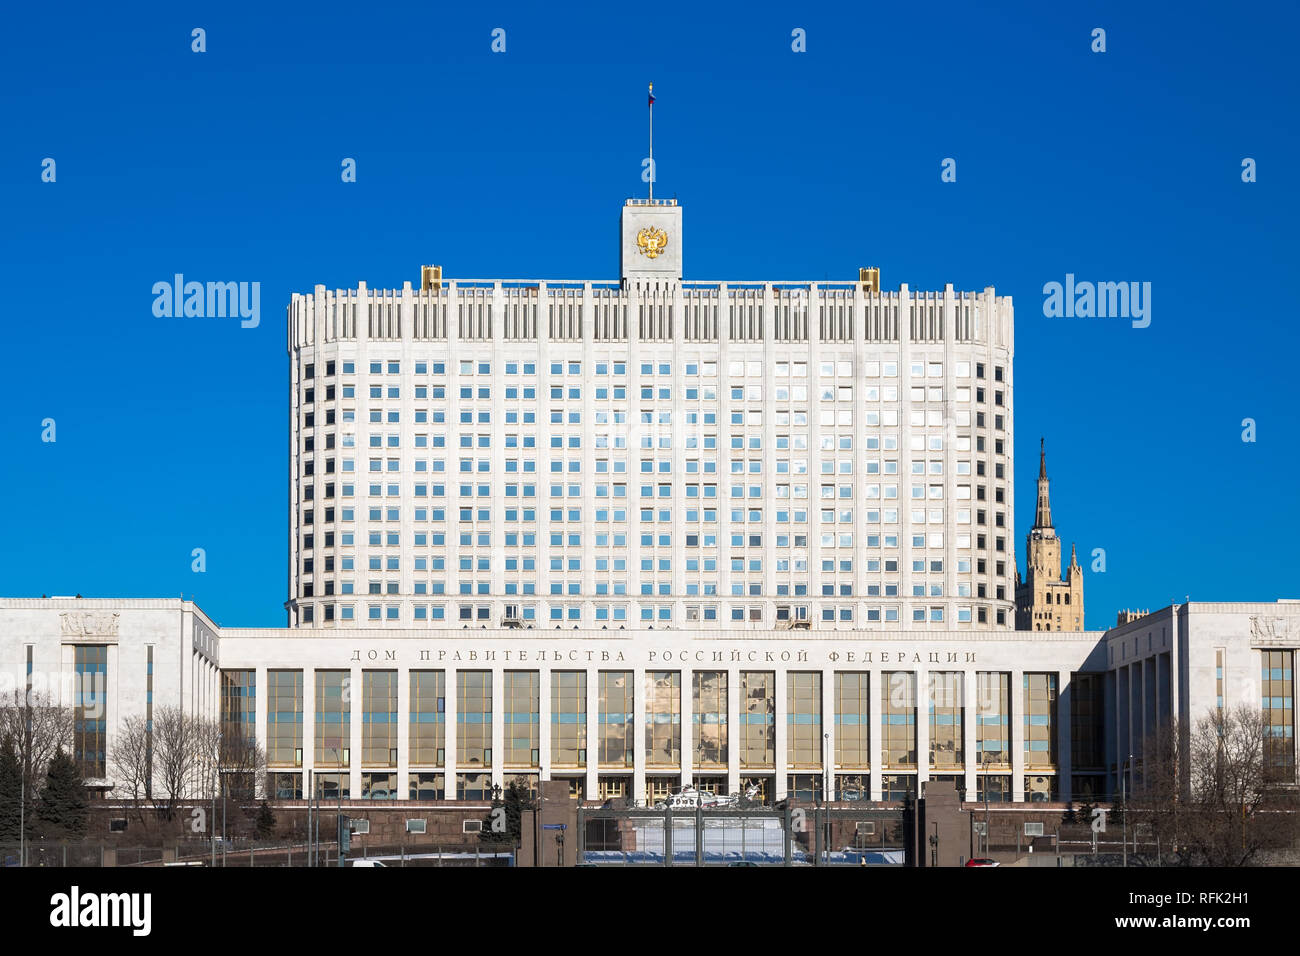 Russische weiße Haus. Beschriftung auf einem Gebäude übersetzt: "Das Haus der Regierung der Russischen Föderation". Stockfoto